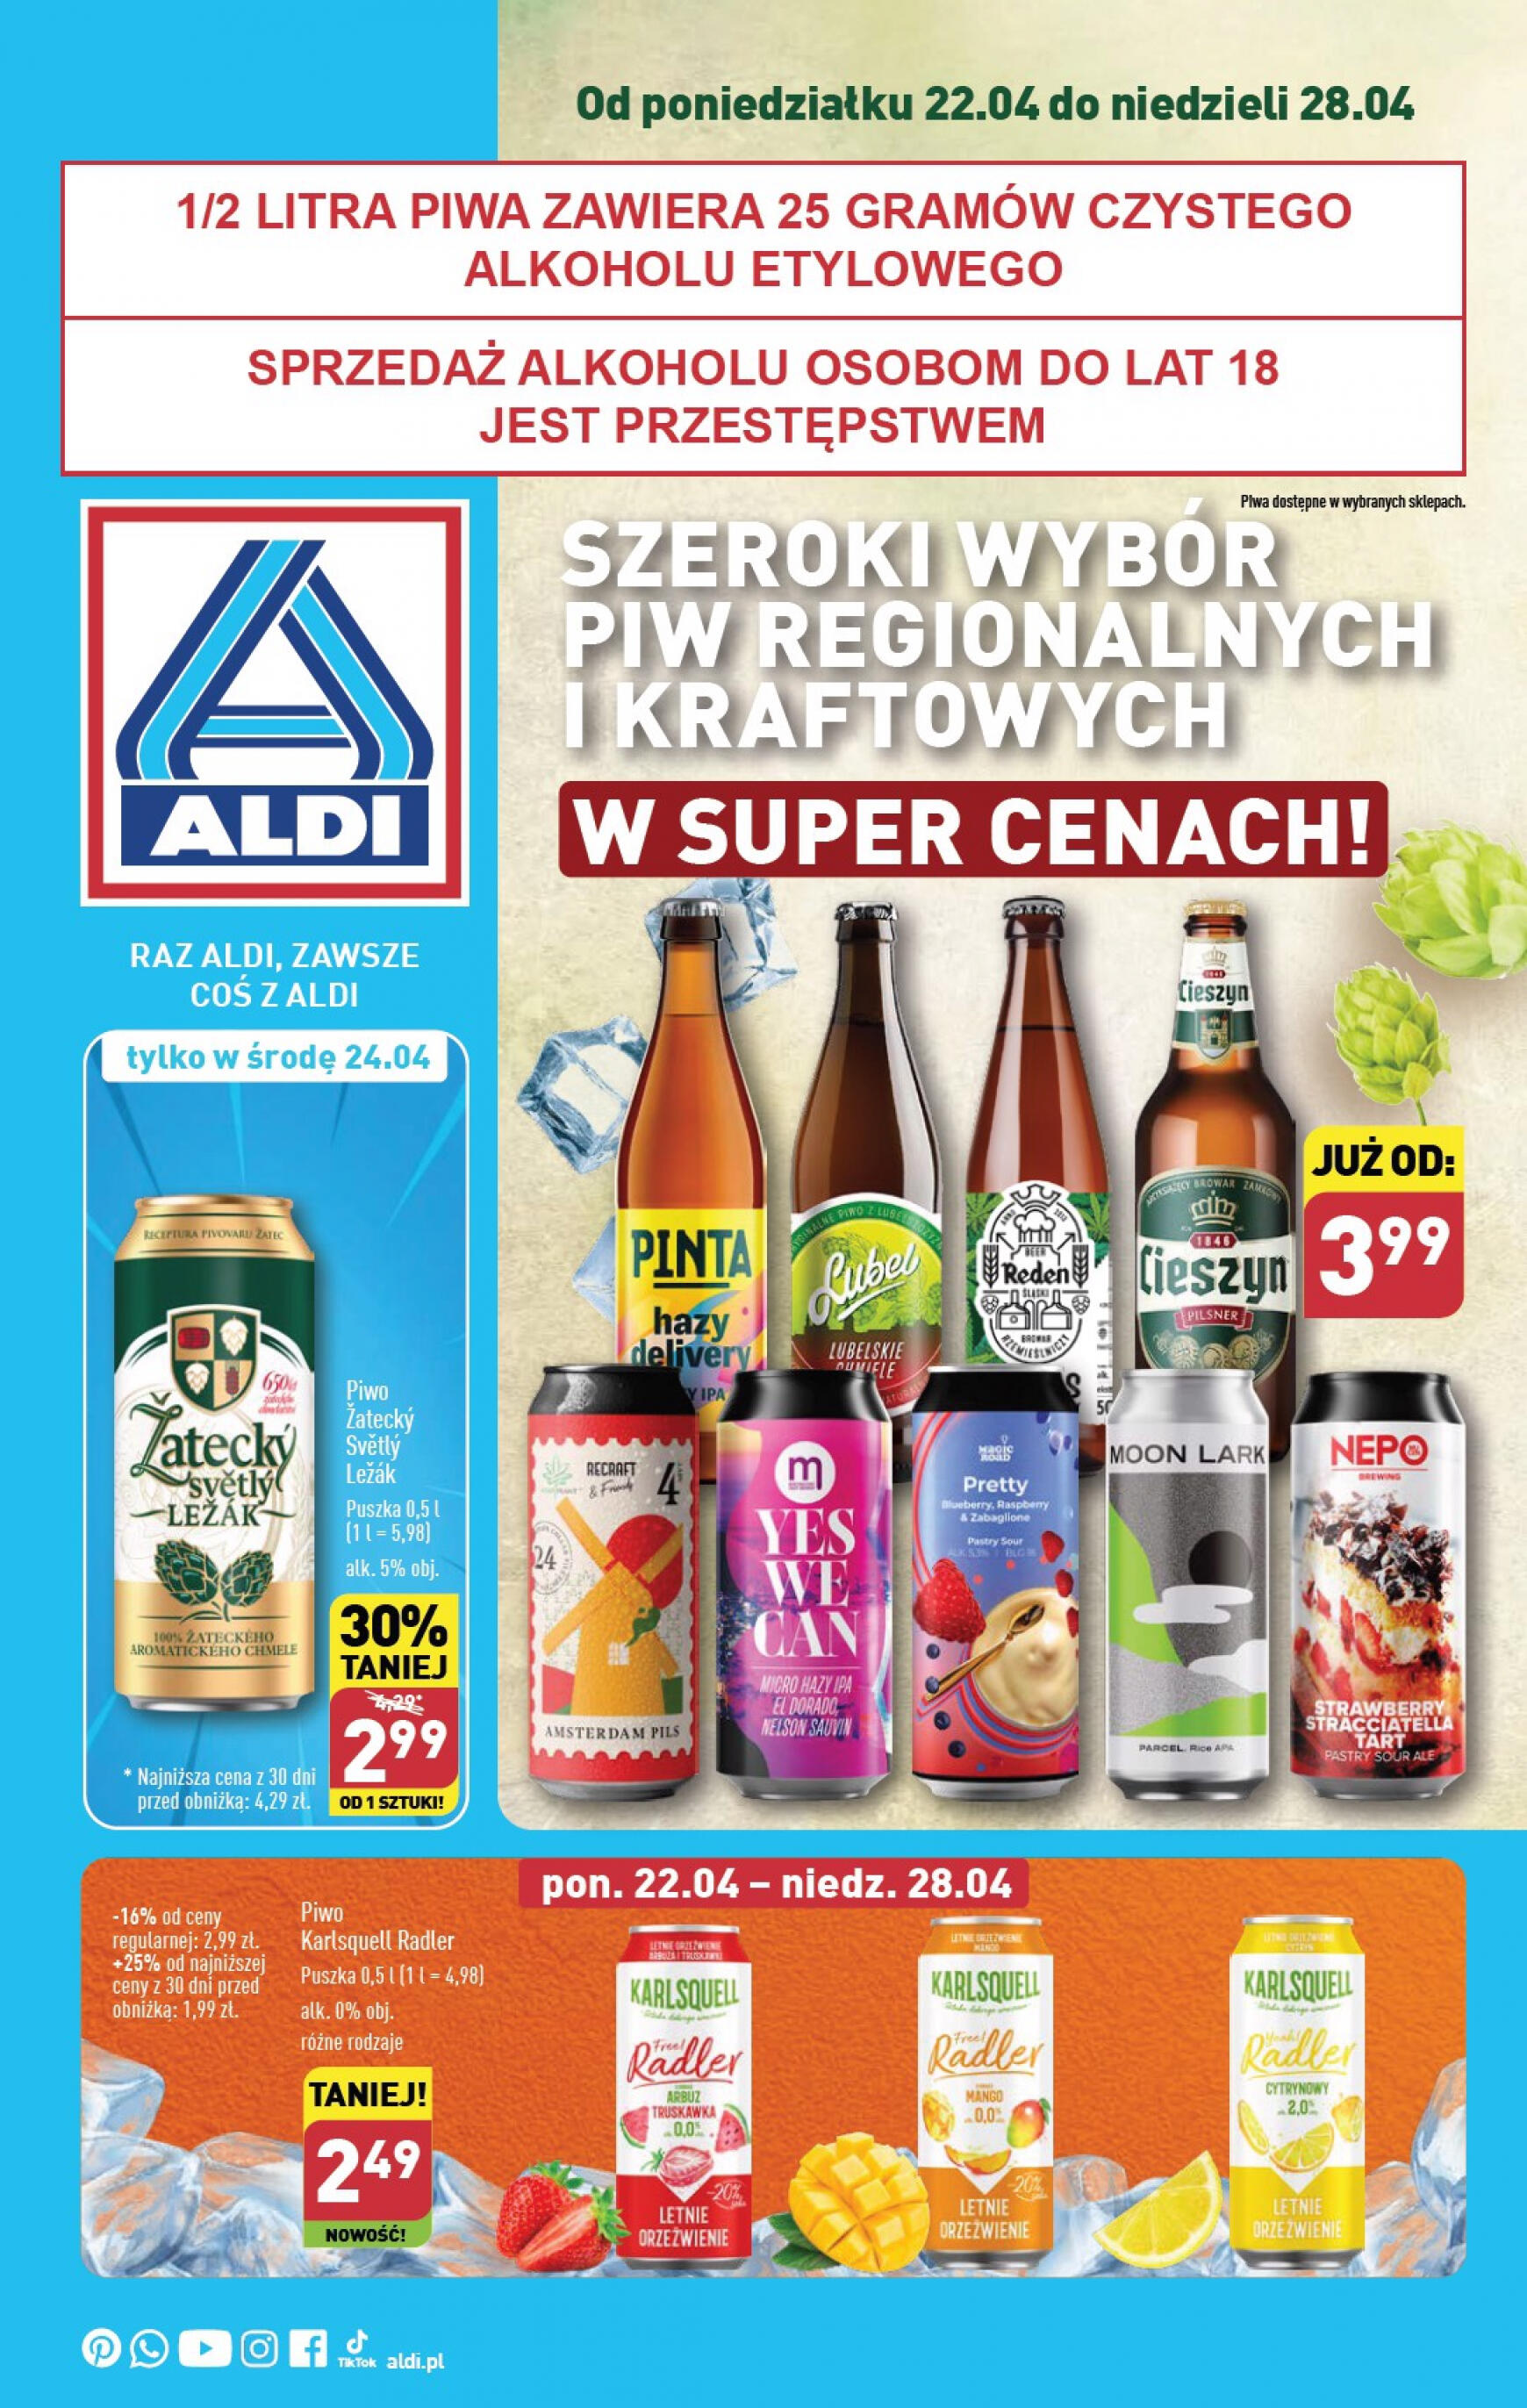 aldi - Aldi - Festiwal piwa w super cenach gazetka aktualna ważna od 22.04. - 28.04. - page: 1